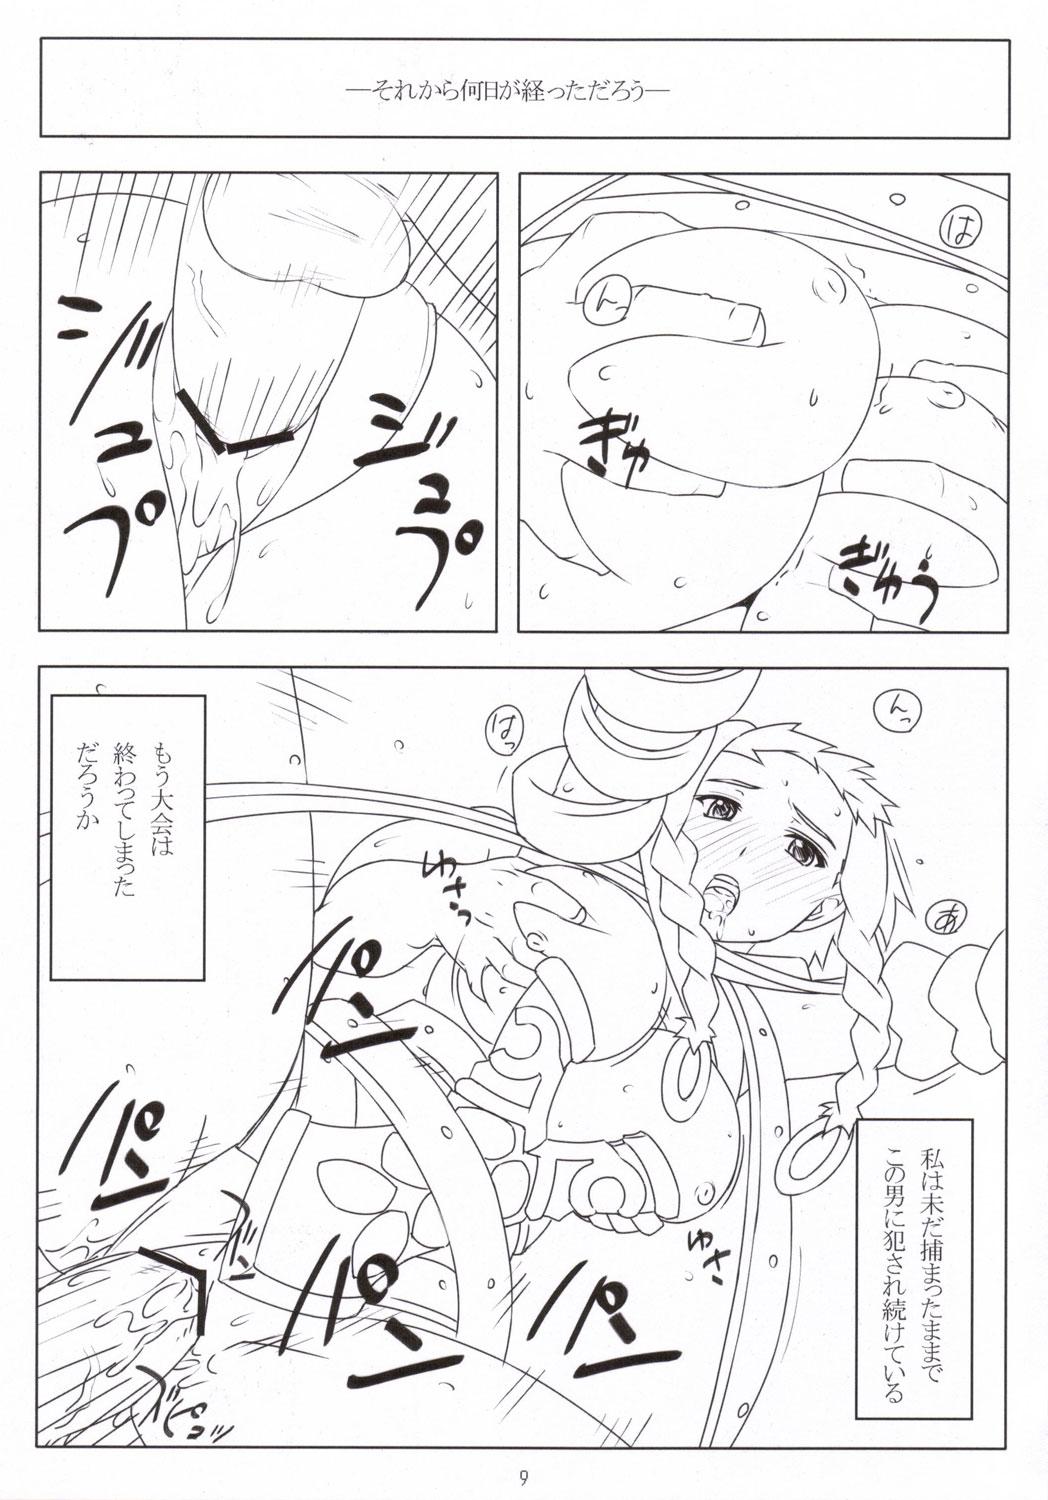 Pissing Ken to Megane - Queens blade Pani poni dash Nuru - Page 8